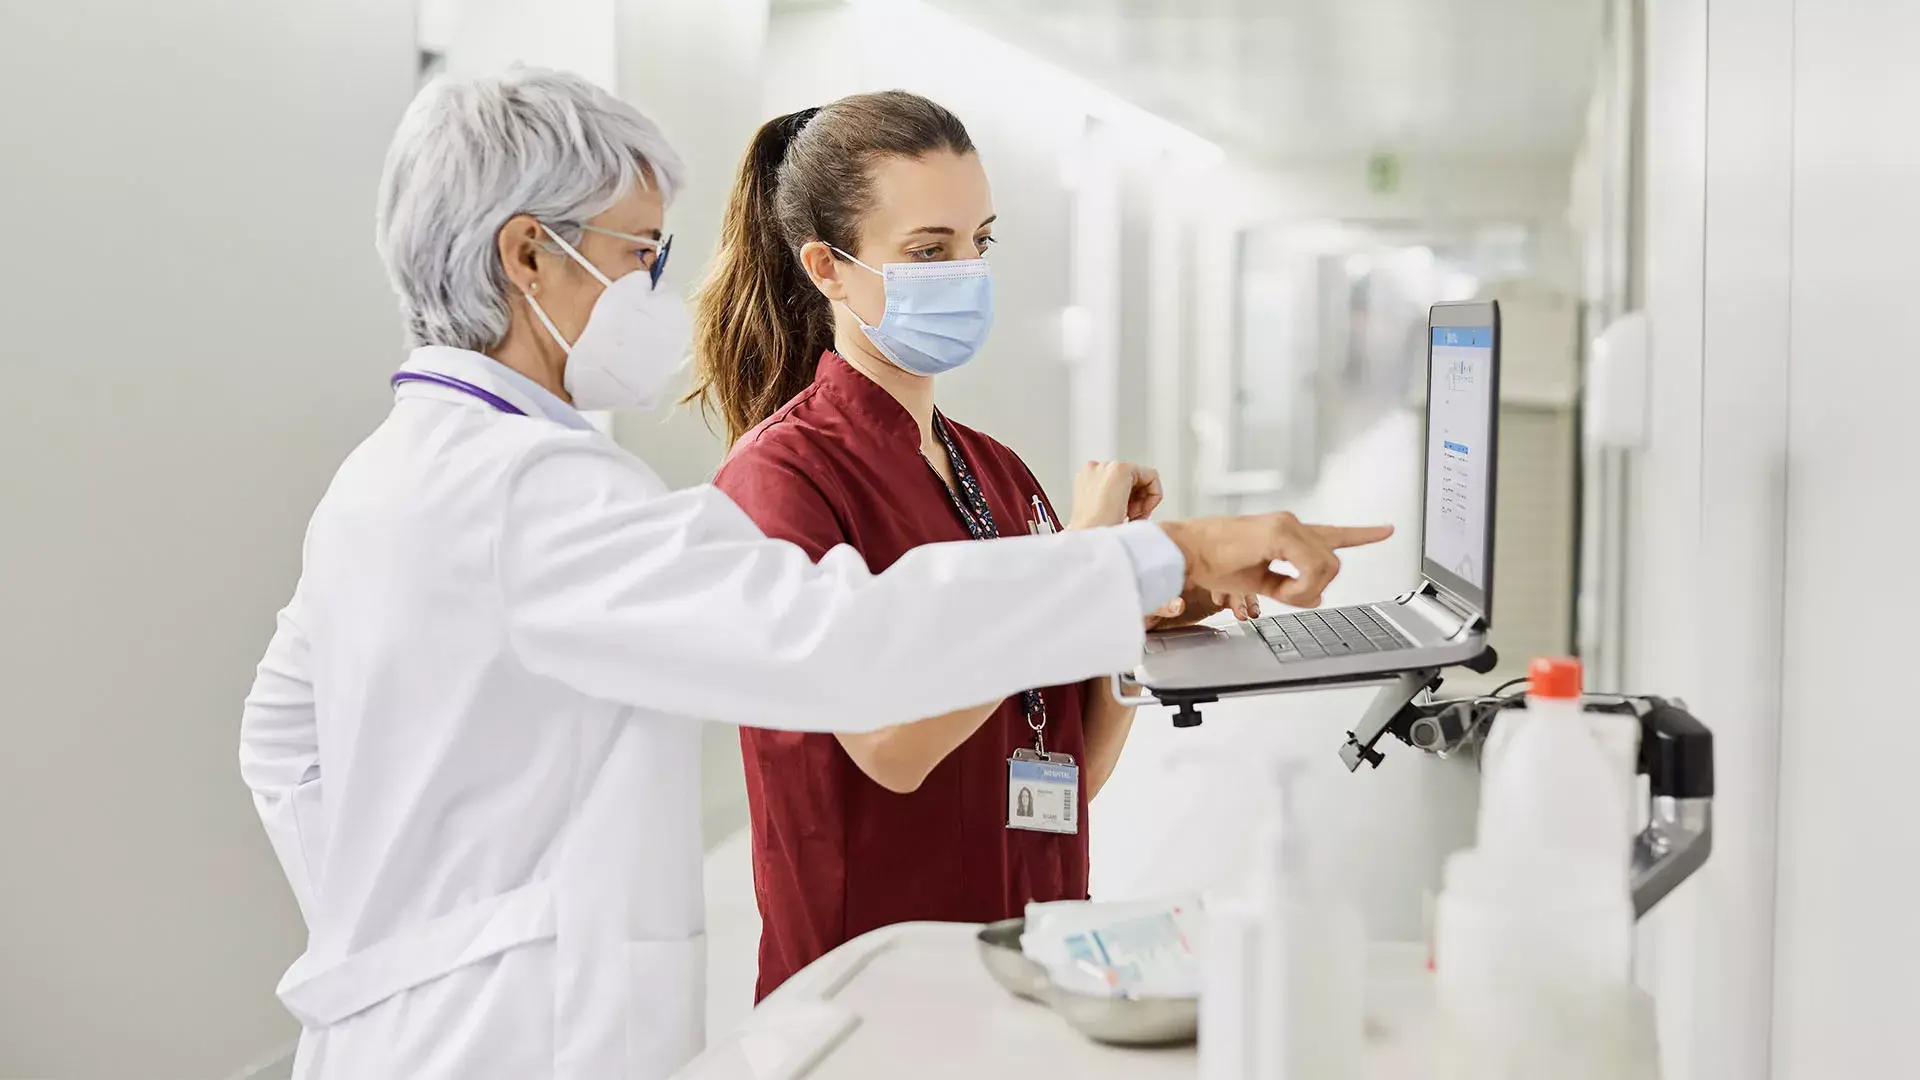 Twee vrouwelijke artsen met mondkapjes kijken naar een laptop in een ziekenhuisgang